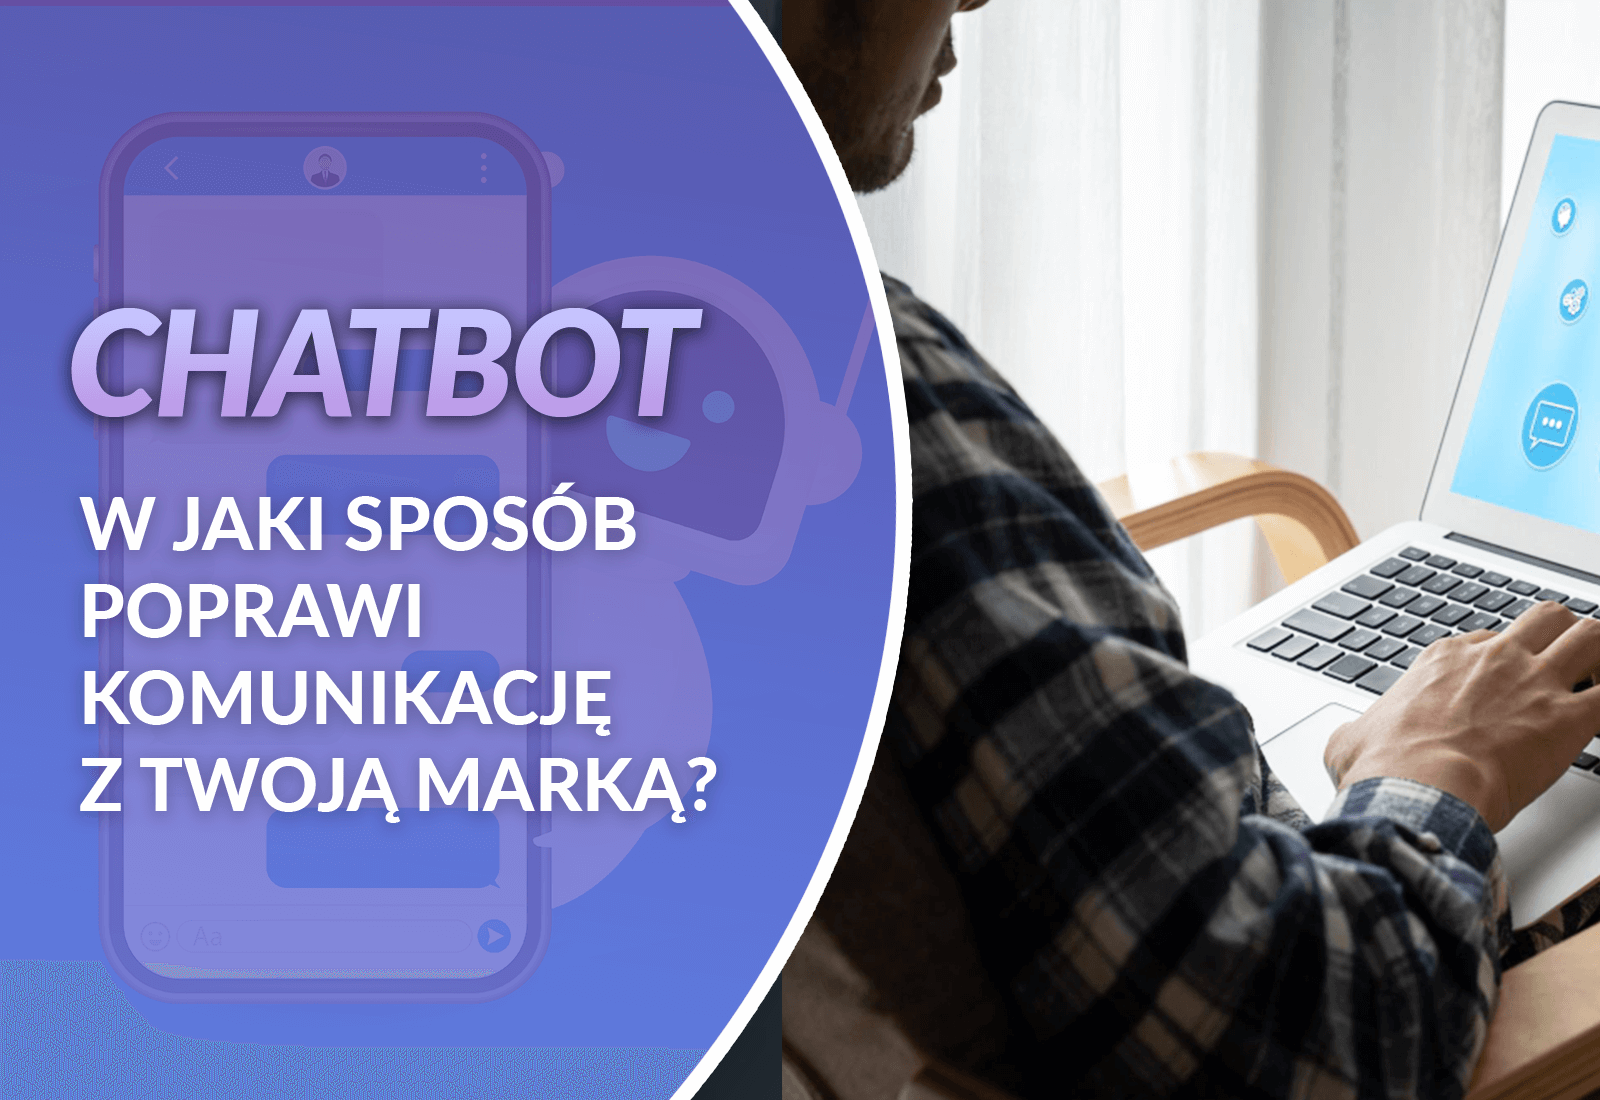 chatbot - w jaki sposób poprawi komunikację z twoją marką